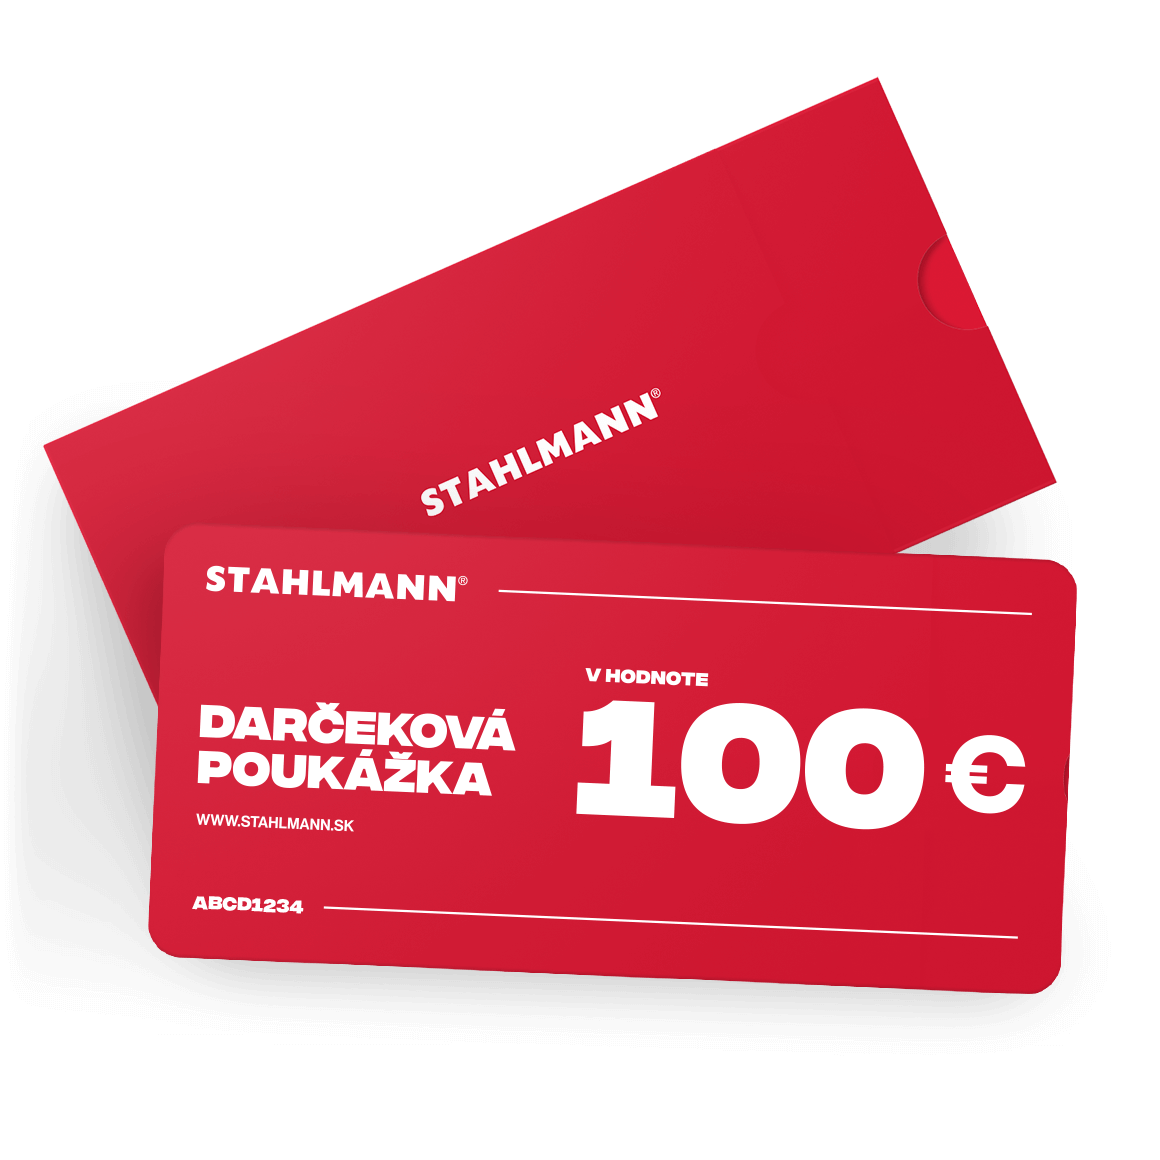 E-shop STAHLMANN 100€ Darčeková poukážka VOUCHER 100€